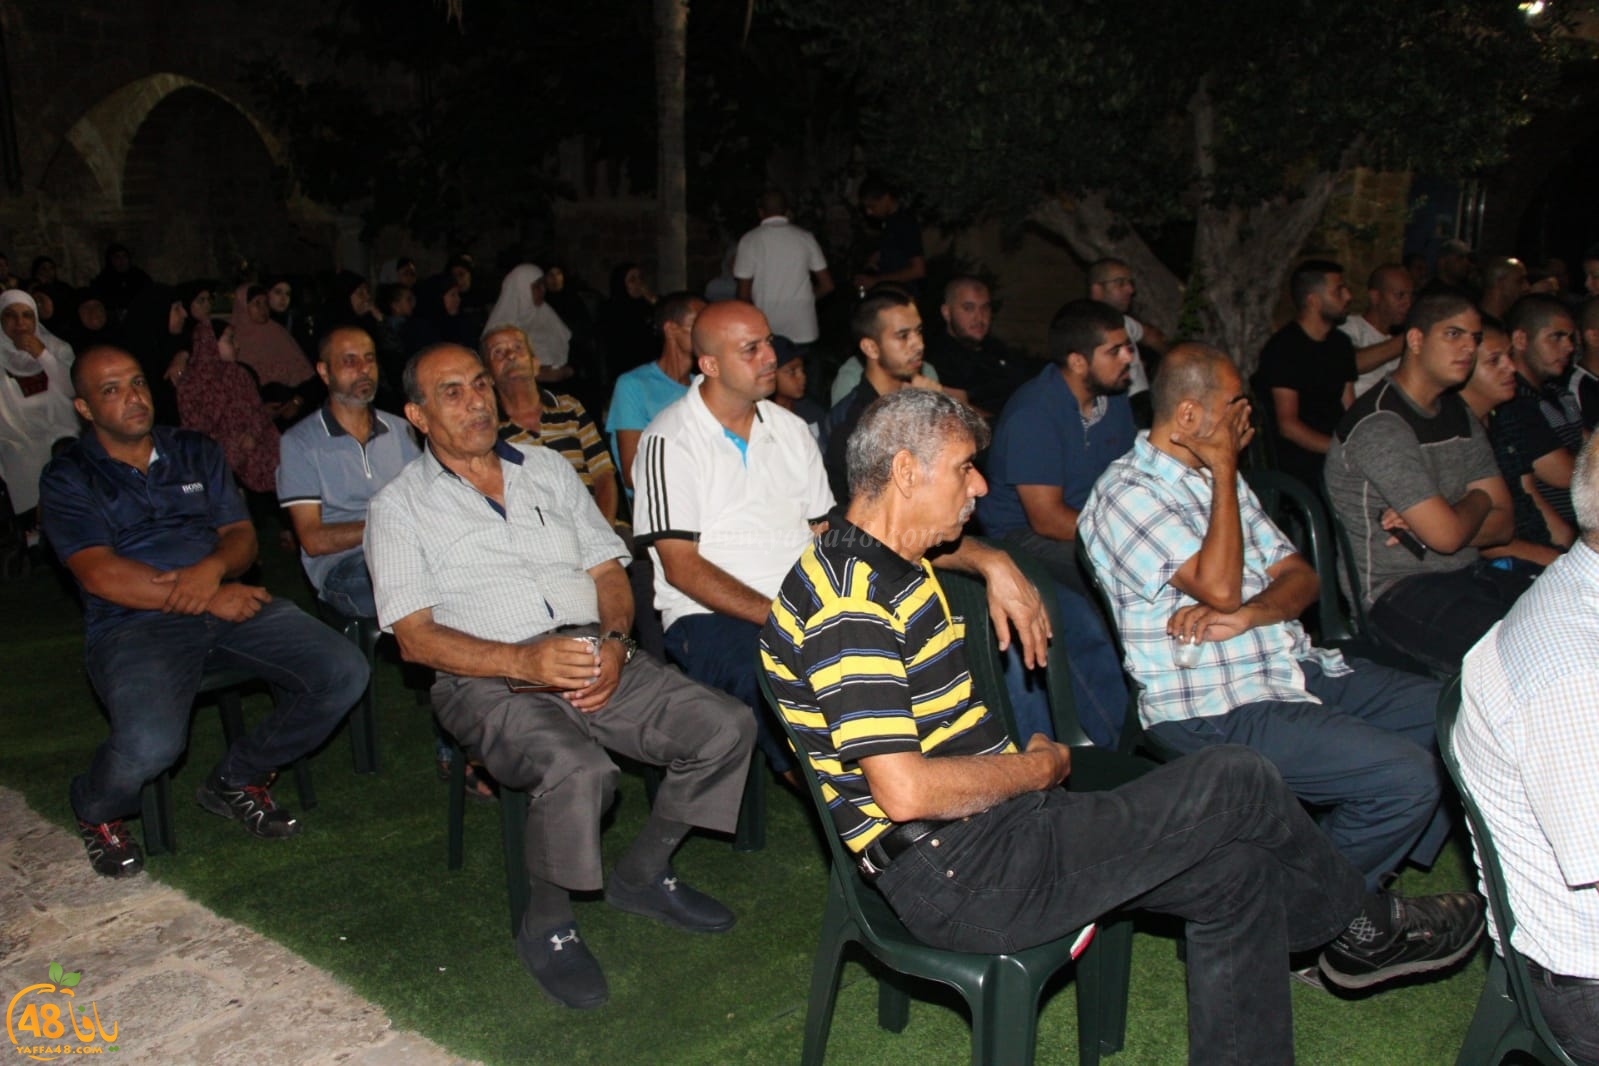  صور: لجنة تيسير الحج والعمرة بيافا تُنظم احتفالاً لتوديع حجاج بيت الله الحرام 